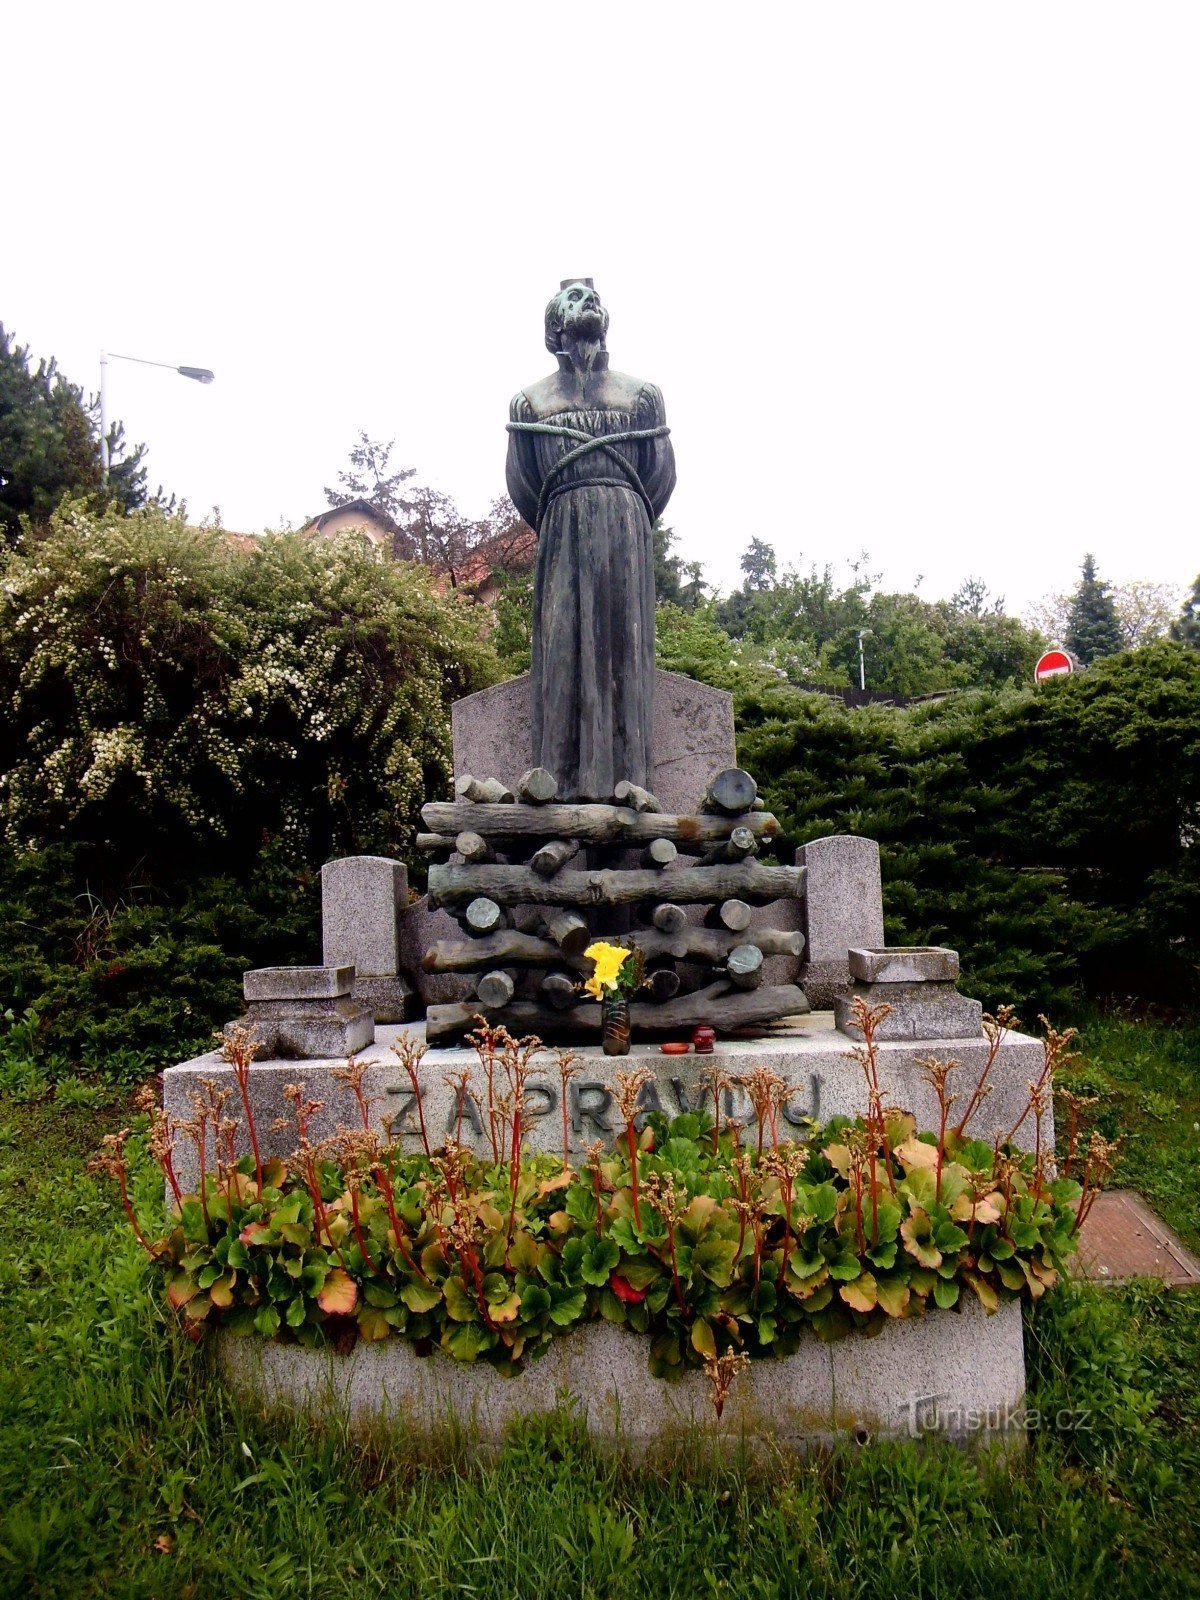 Monumentul lui Jan Hus - Zbraslav